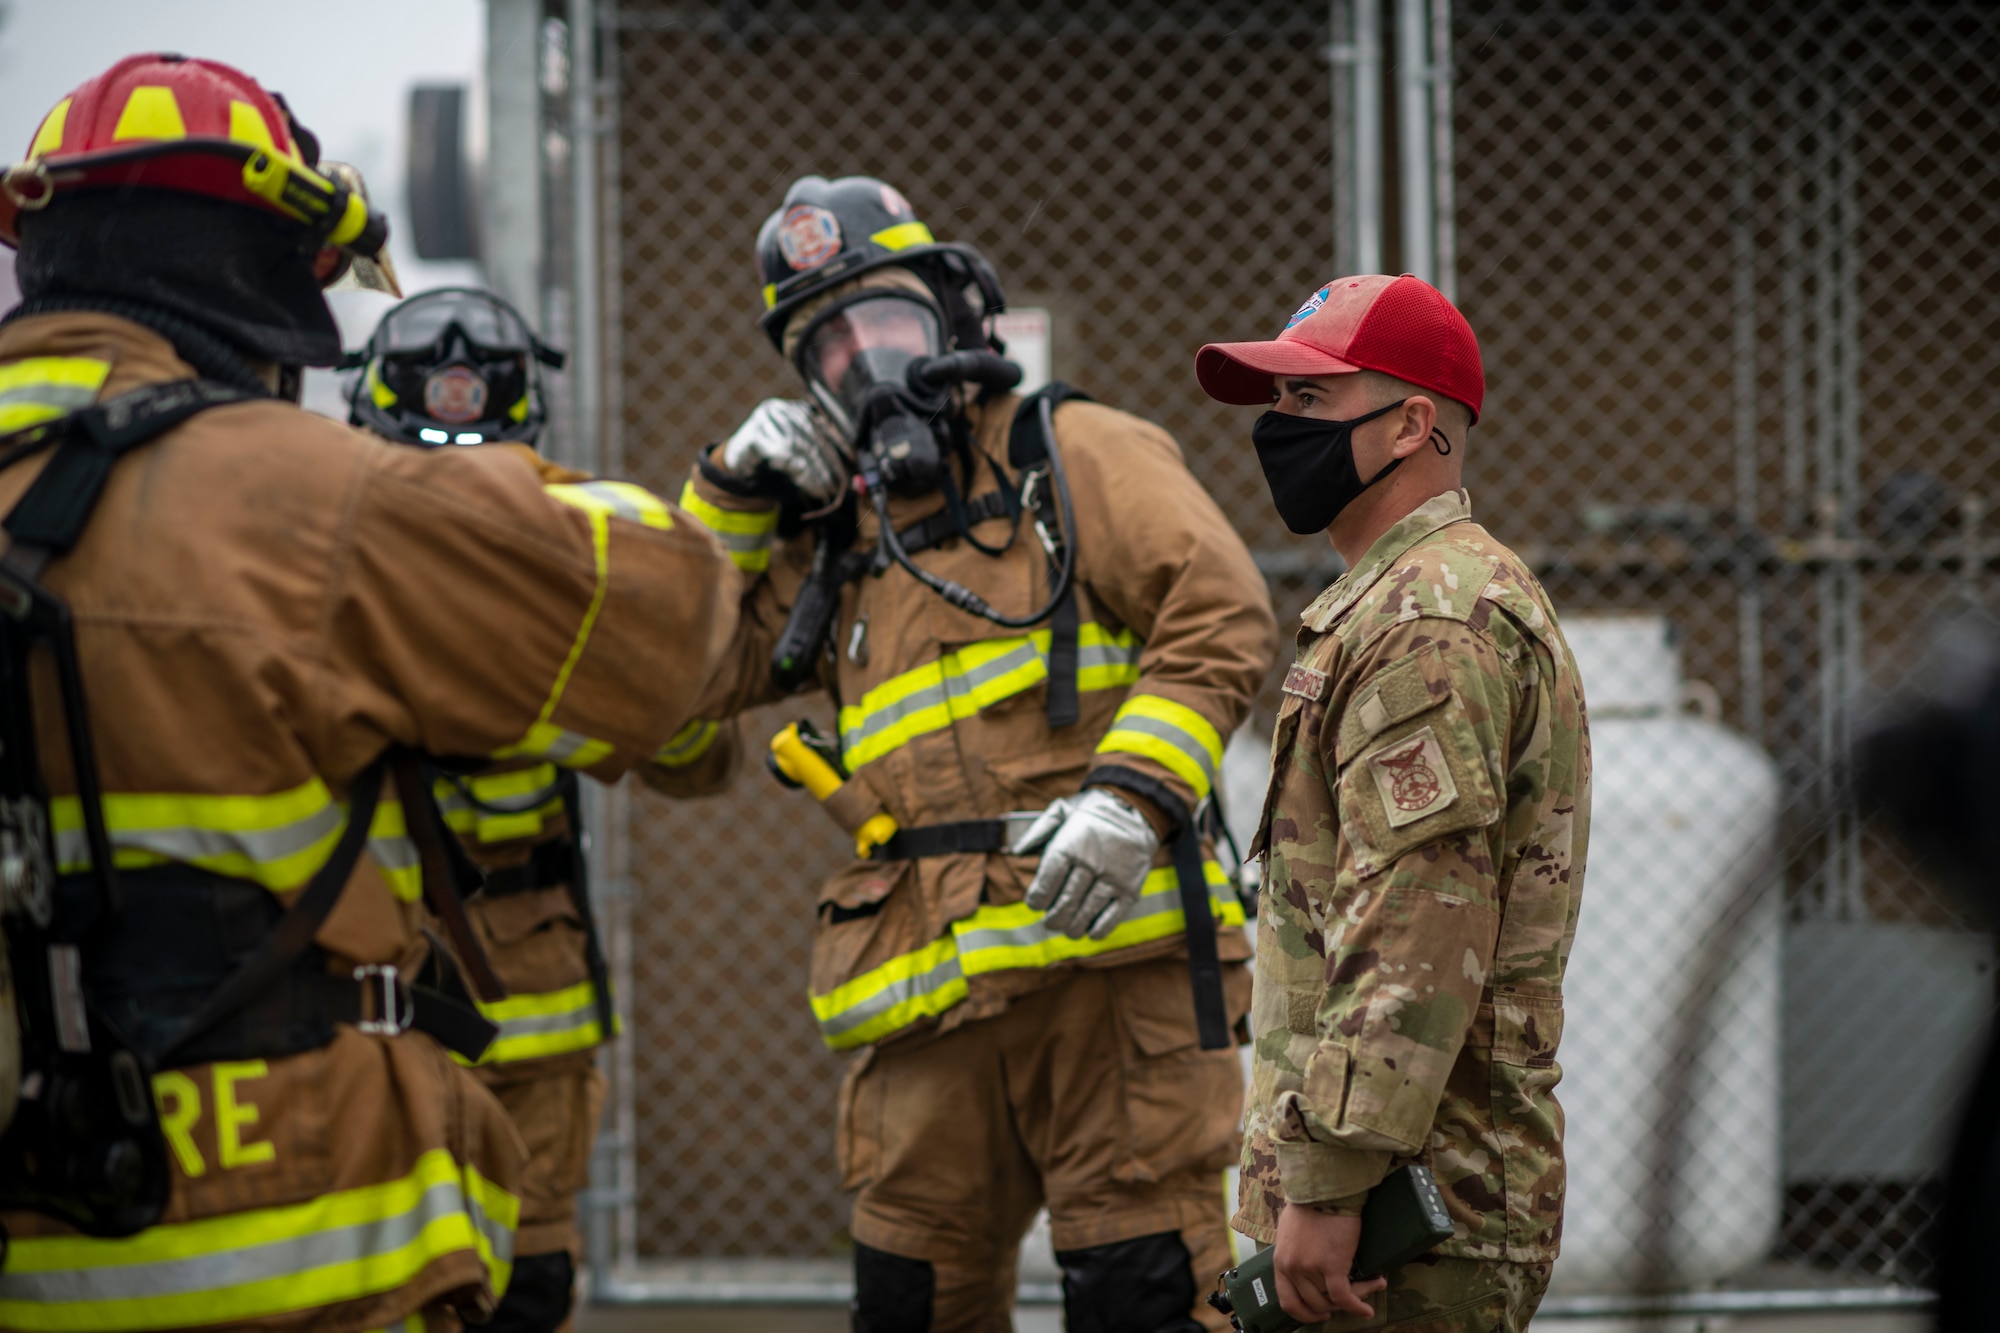 An instructor briefs a group of firemen